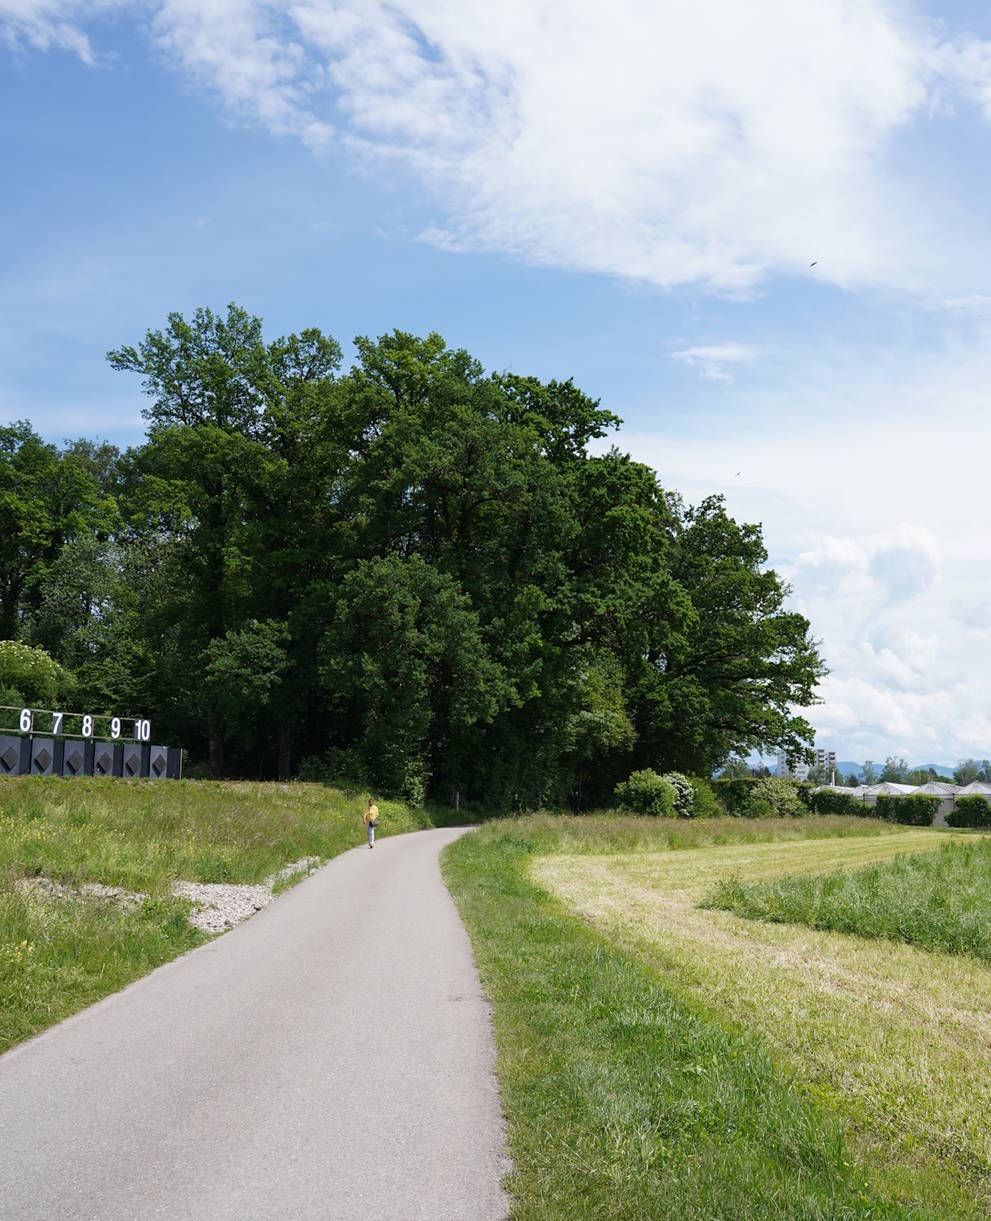 Emissionen vom Schiessstand und der angrenzenden Landwirtschaft beeinträchtigen das Naturschutzgebiet Chrutzelried.